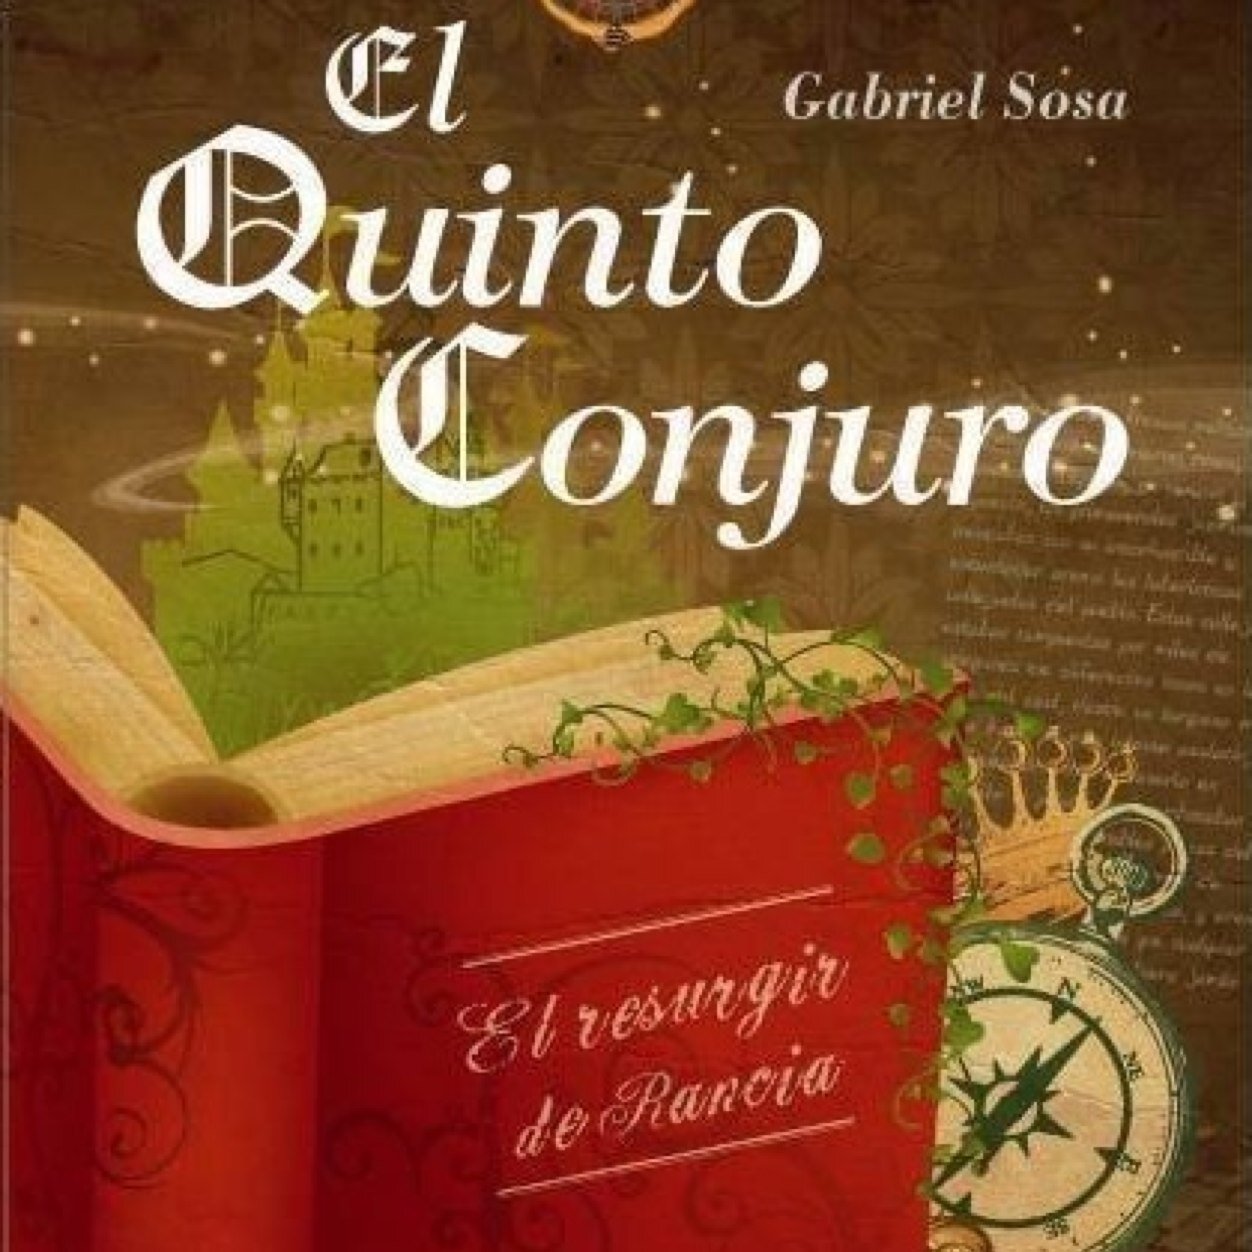 Saga EL QUINTO CONJURO #GabrielSosa Una atrapante historia donde princesas, brujas y hechizos son protagonistas de aventuras e intrigas, a lo largo de los años.